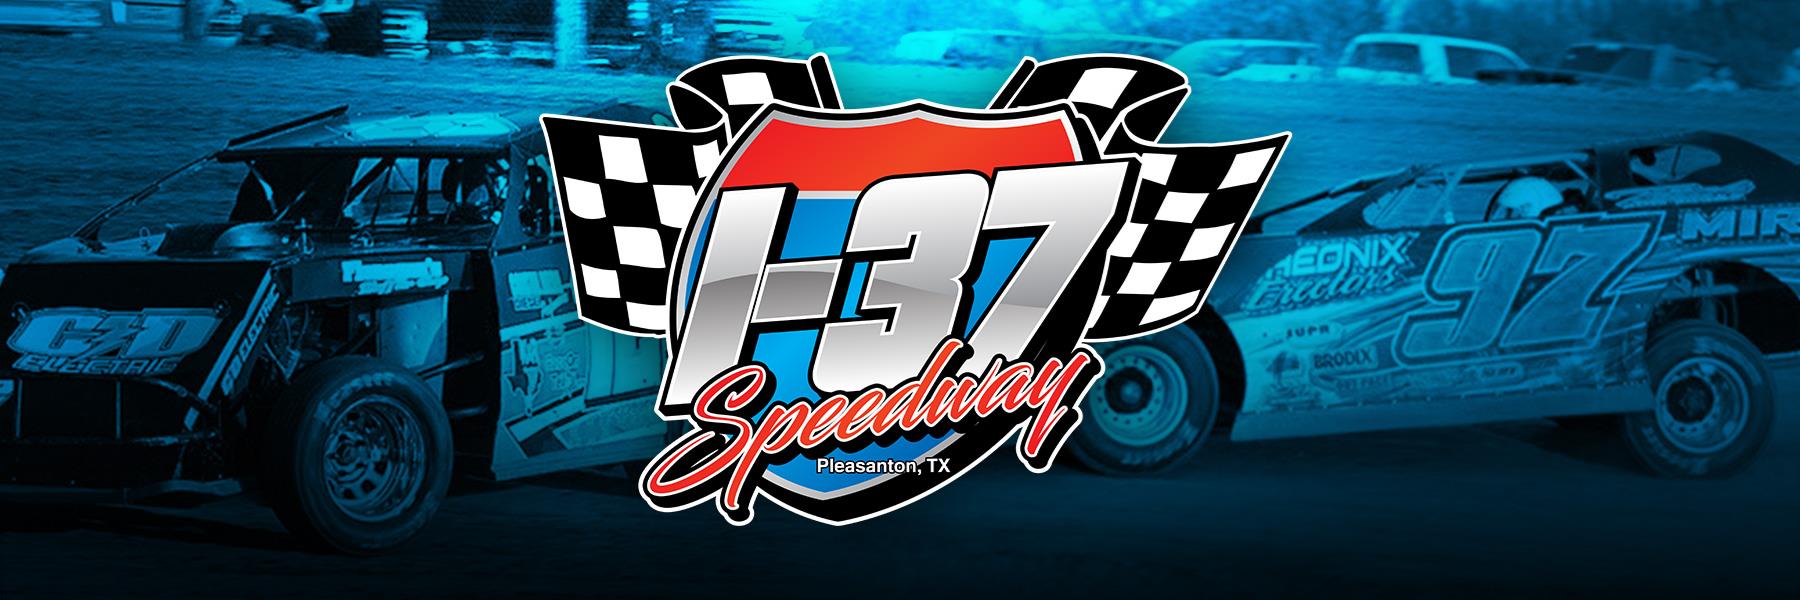 10/29/2021 - I-37 Speedway